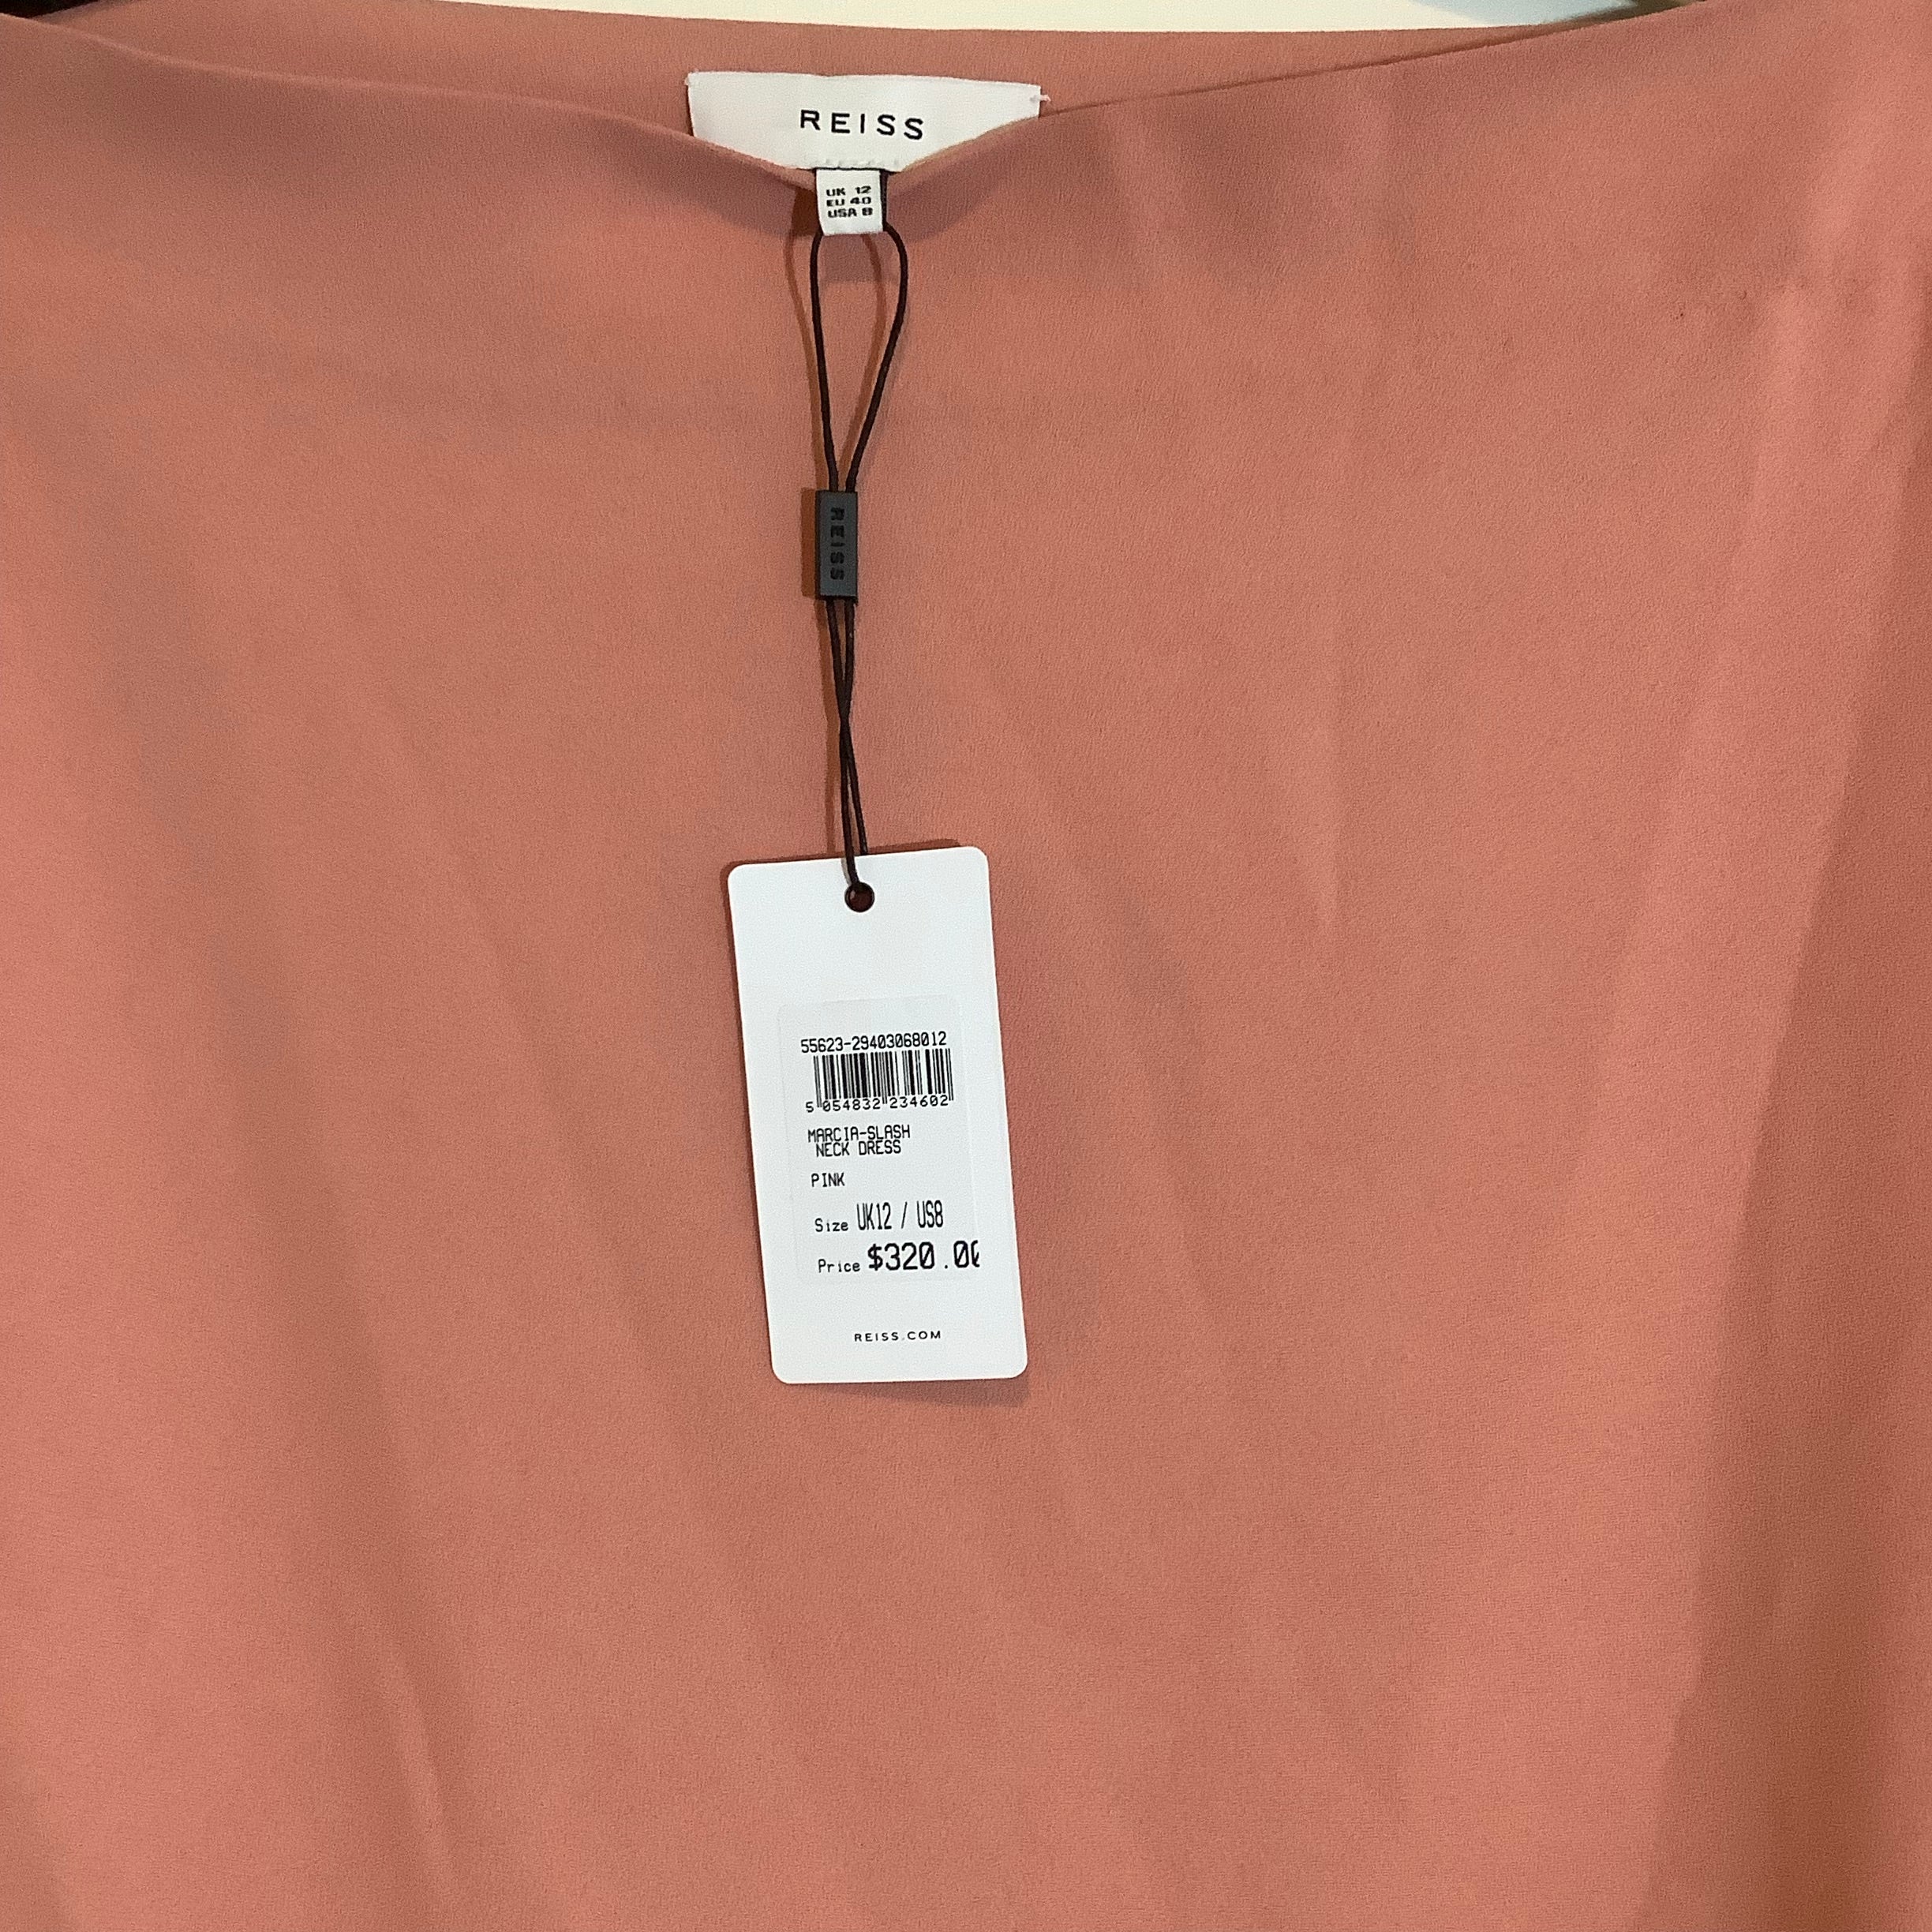 Reiss Orange Dress Size 8 NWT